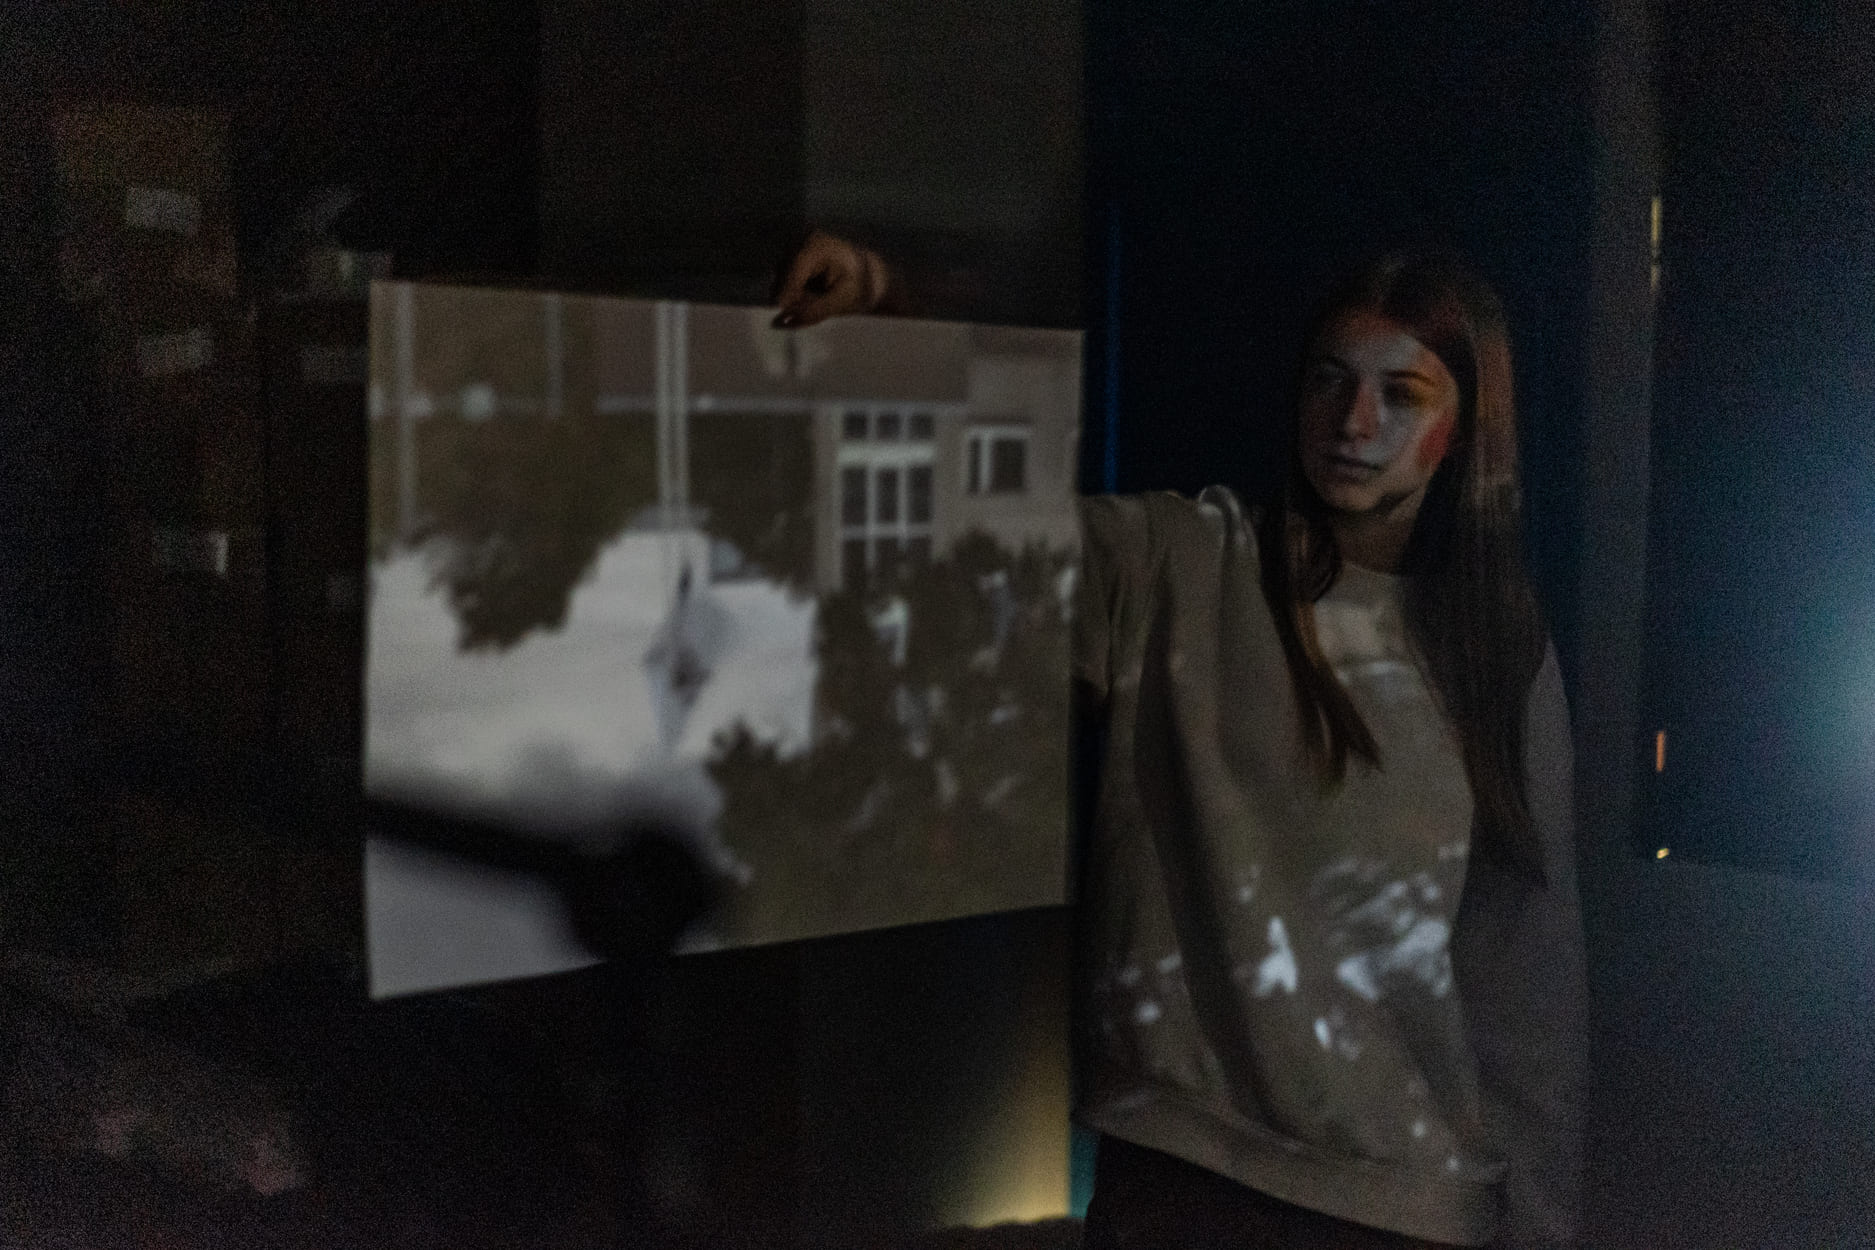 Fotol on kujutatud camera obscura abil loodud kujutist